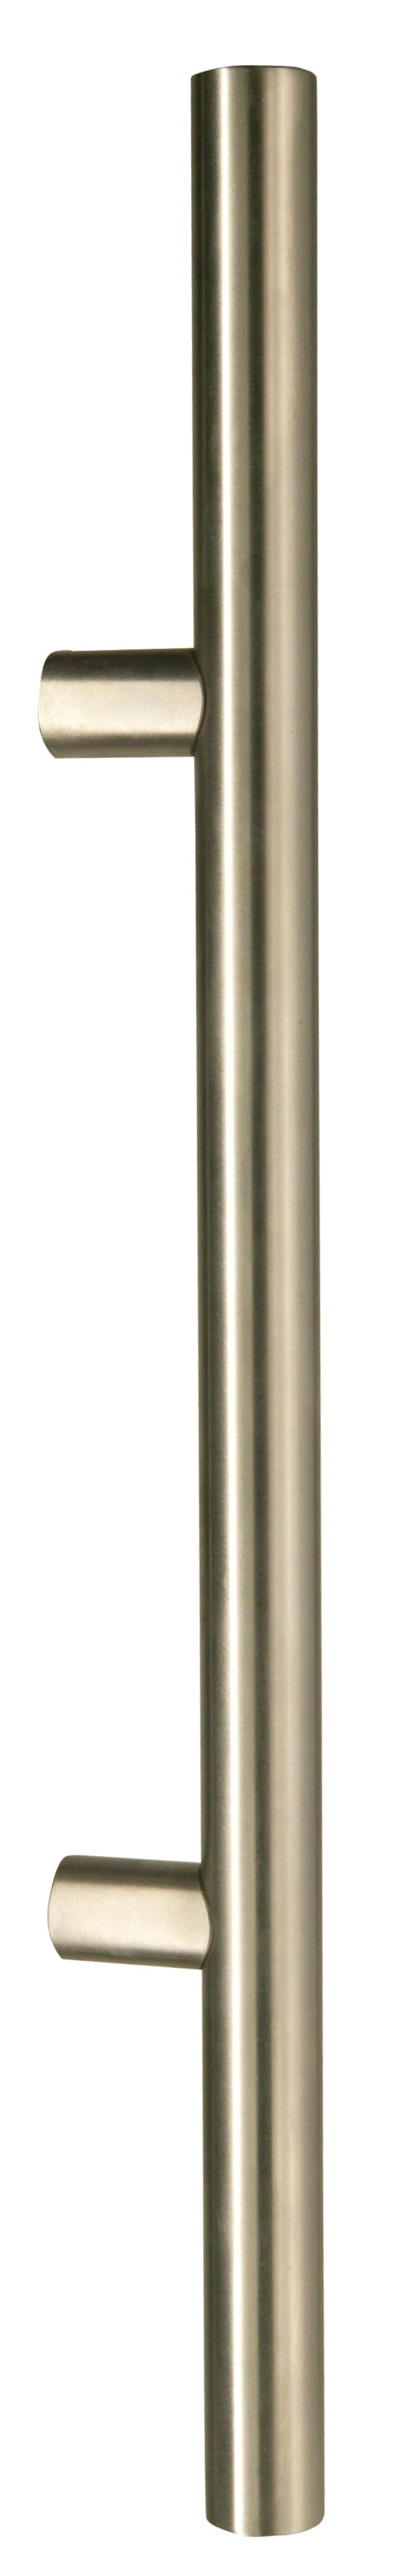 Tirador Acero Inox Redondo 1500 mm. Diámetro del tubo 32 mm